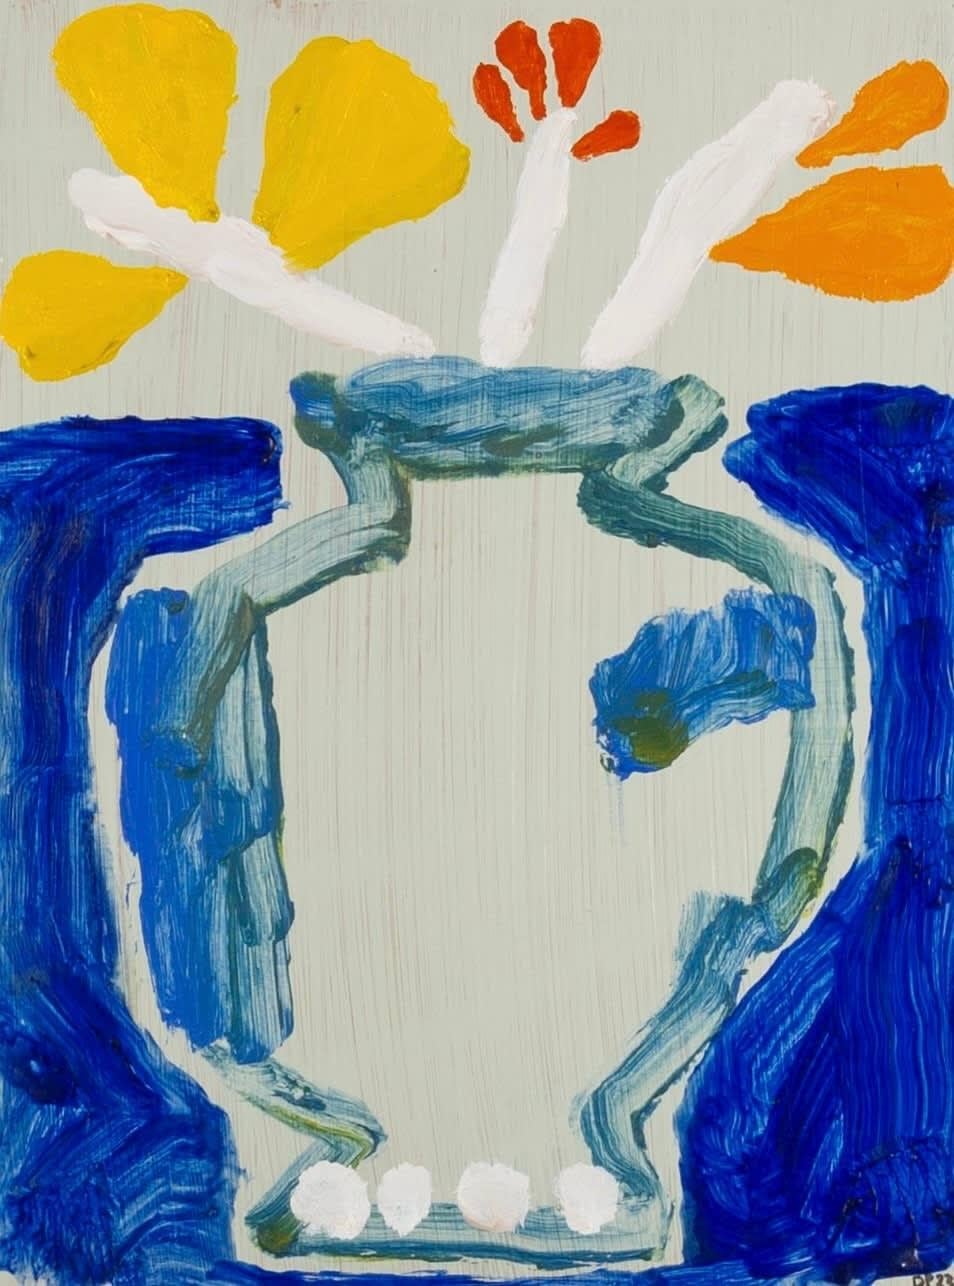 Stilleben mit blauem Gemälde von David Pearce B. 1963, 2023

Zusätzliche Informationen:
Medium: Acryl auf Platte
Abmessungen: 40,6 x 30,5 cm
16 x 12 Zoll
Signiert mit Initialen und datiert.

David Pearce ist ein britischer Maler.

Nachdem er in den